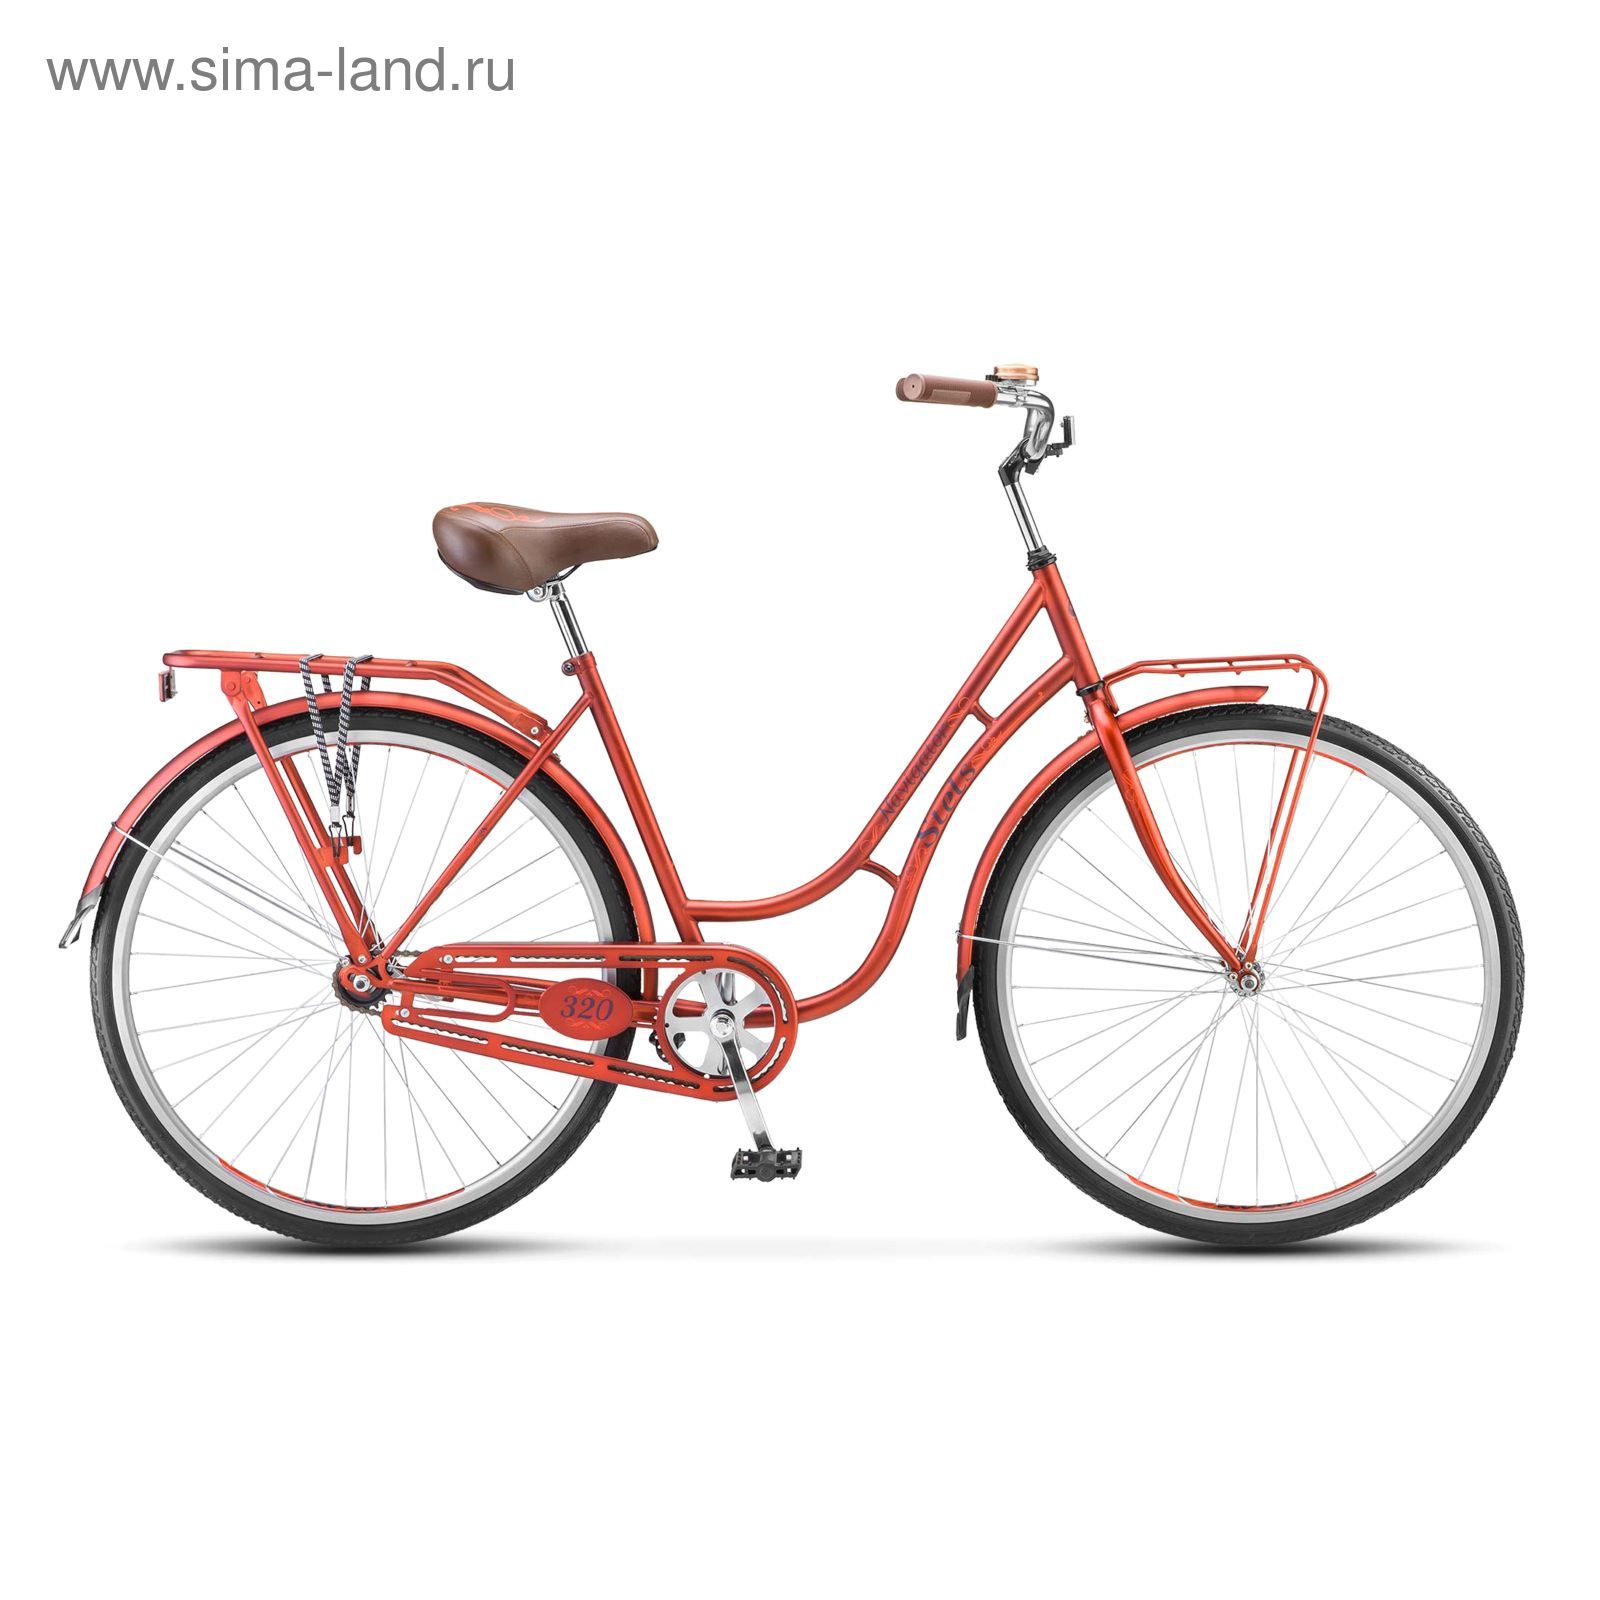 Велосипед 28" Stels Navigator-320 Lady, 2017, цвет красный, размер 19,5"